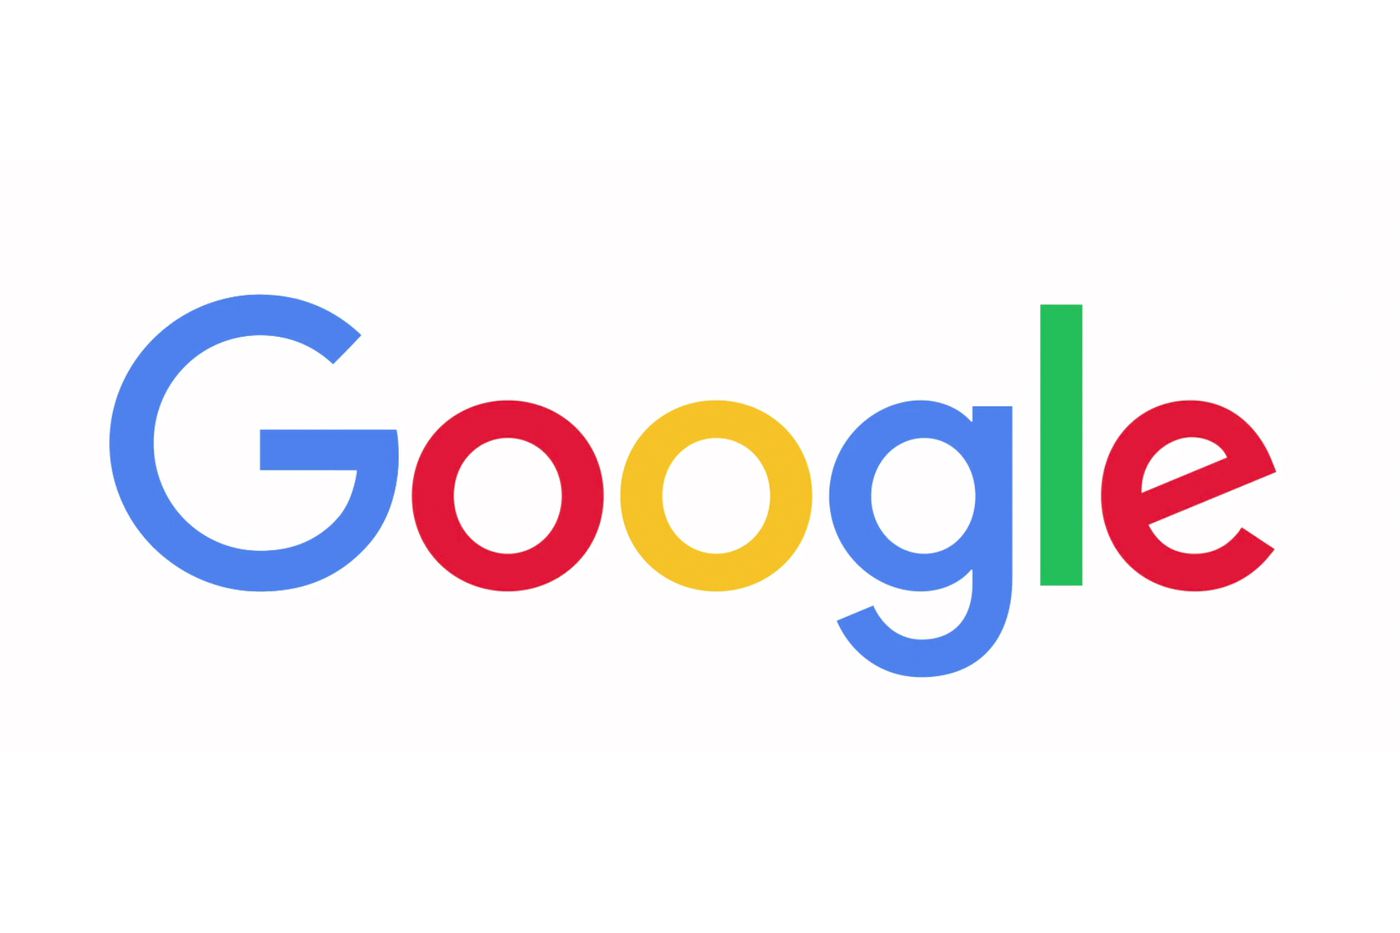 

Google Klingeltöne für Handys

